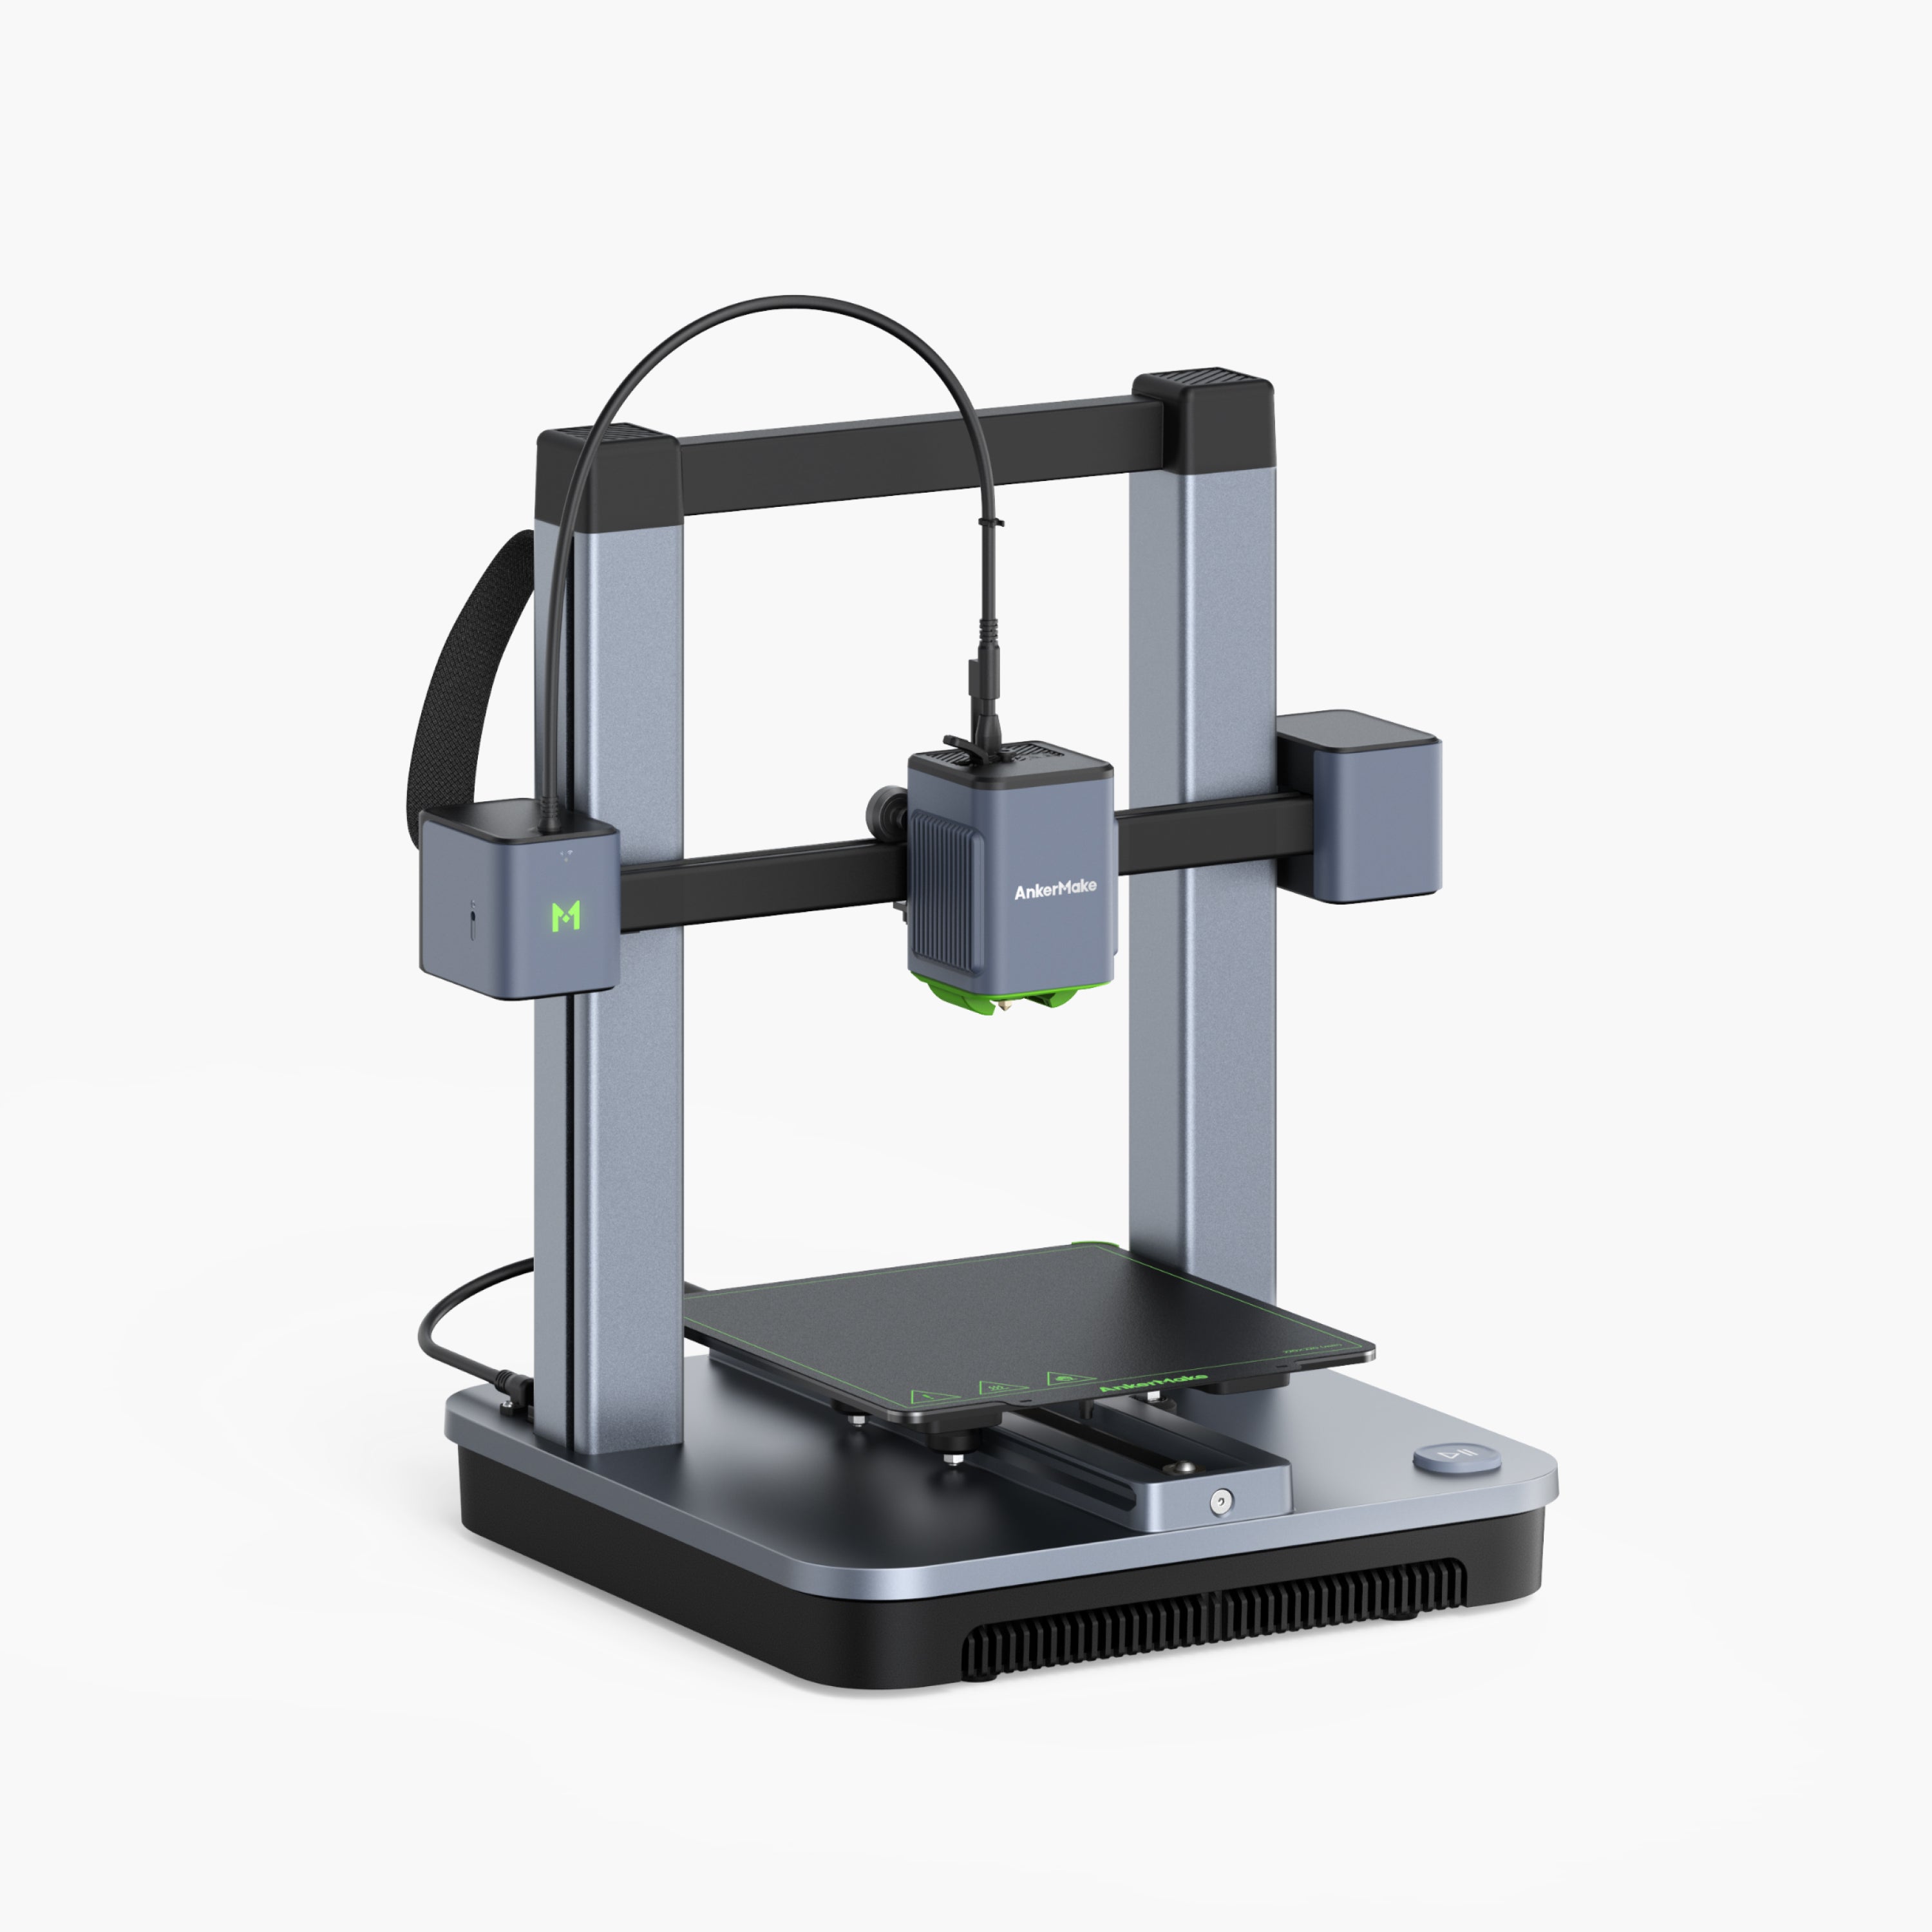 

M5C 3D Printer